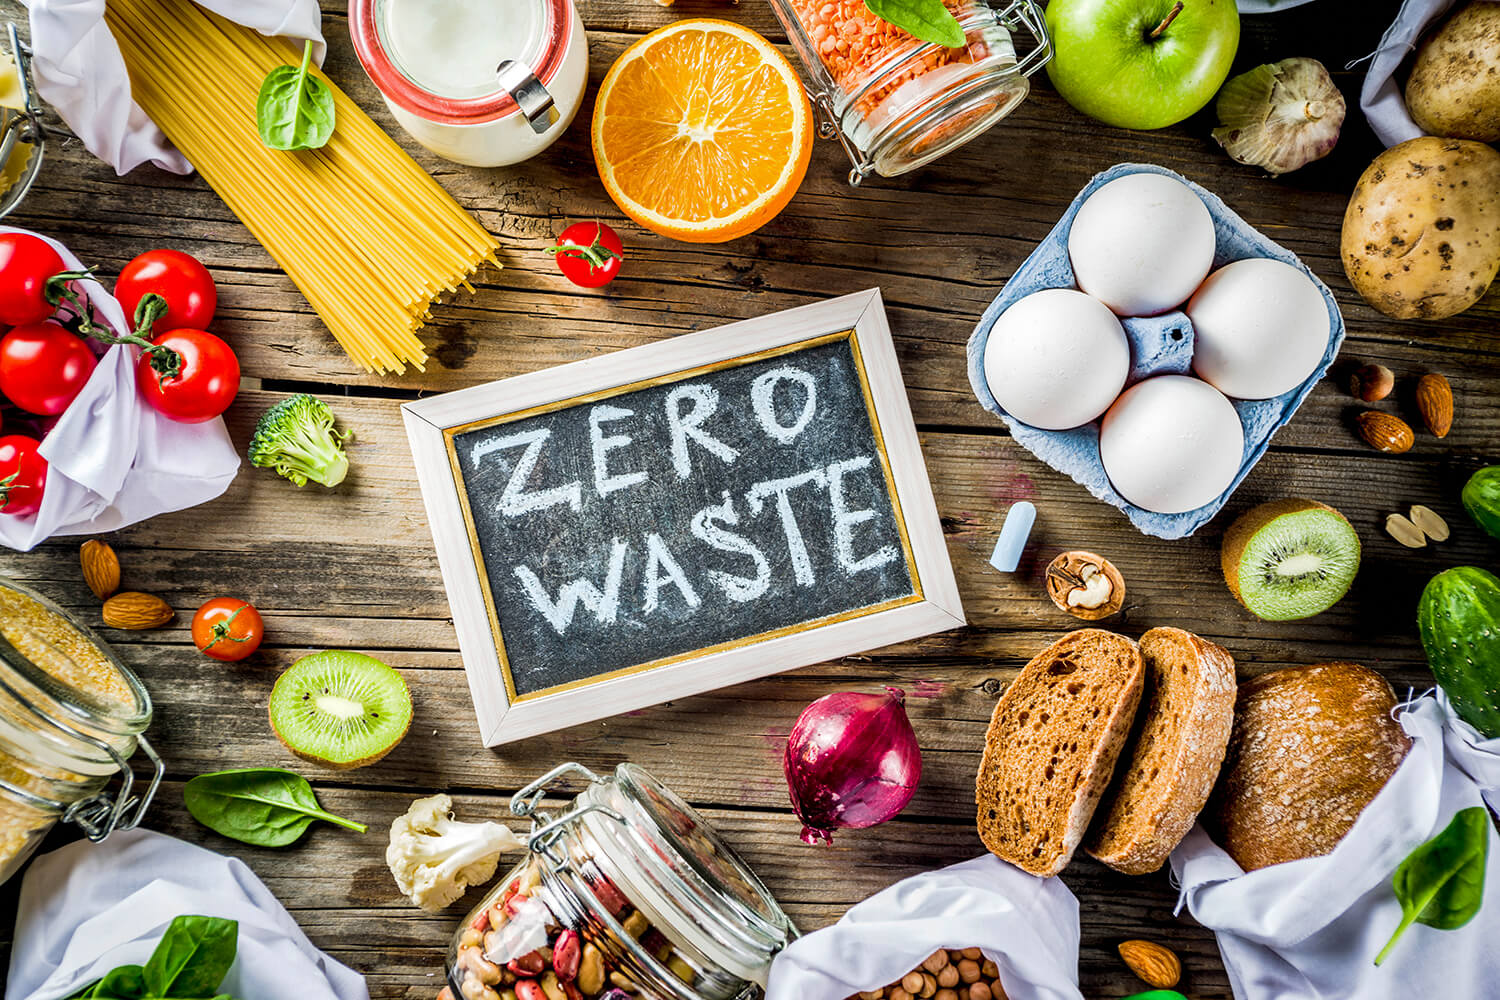 Verschiedene angebrochene Lebensmittel mit Kreidetafel "Zero Waste"